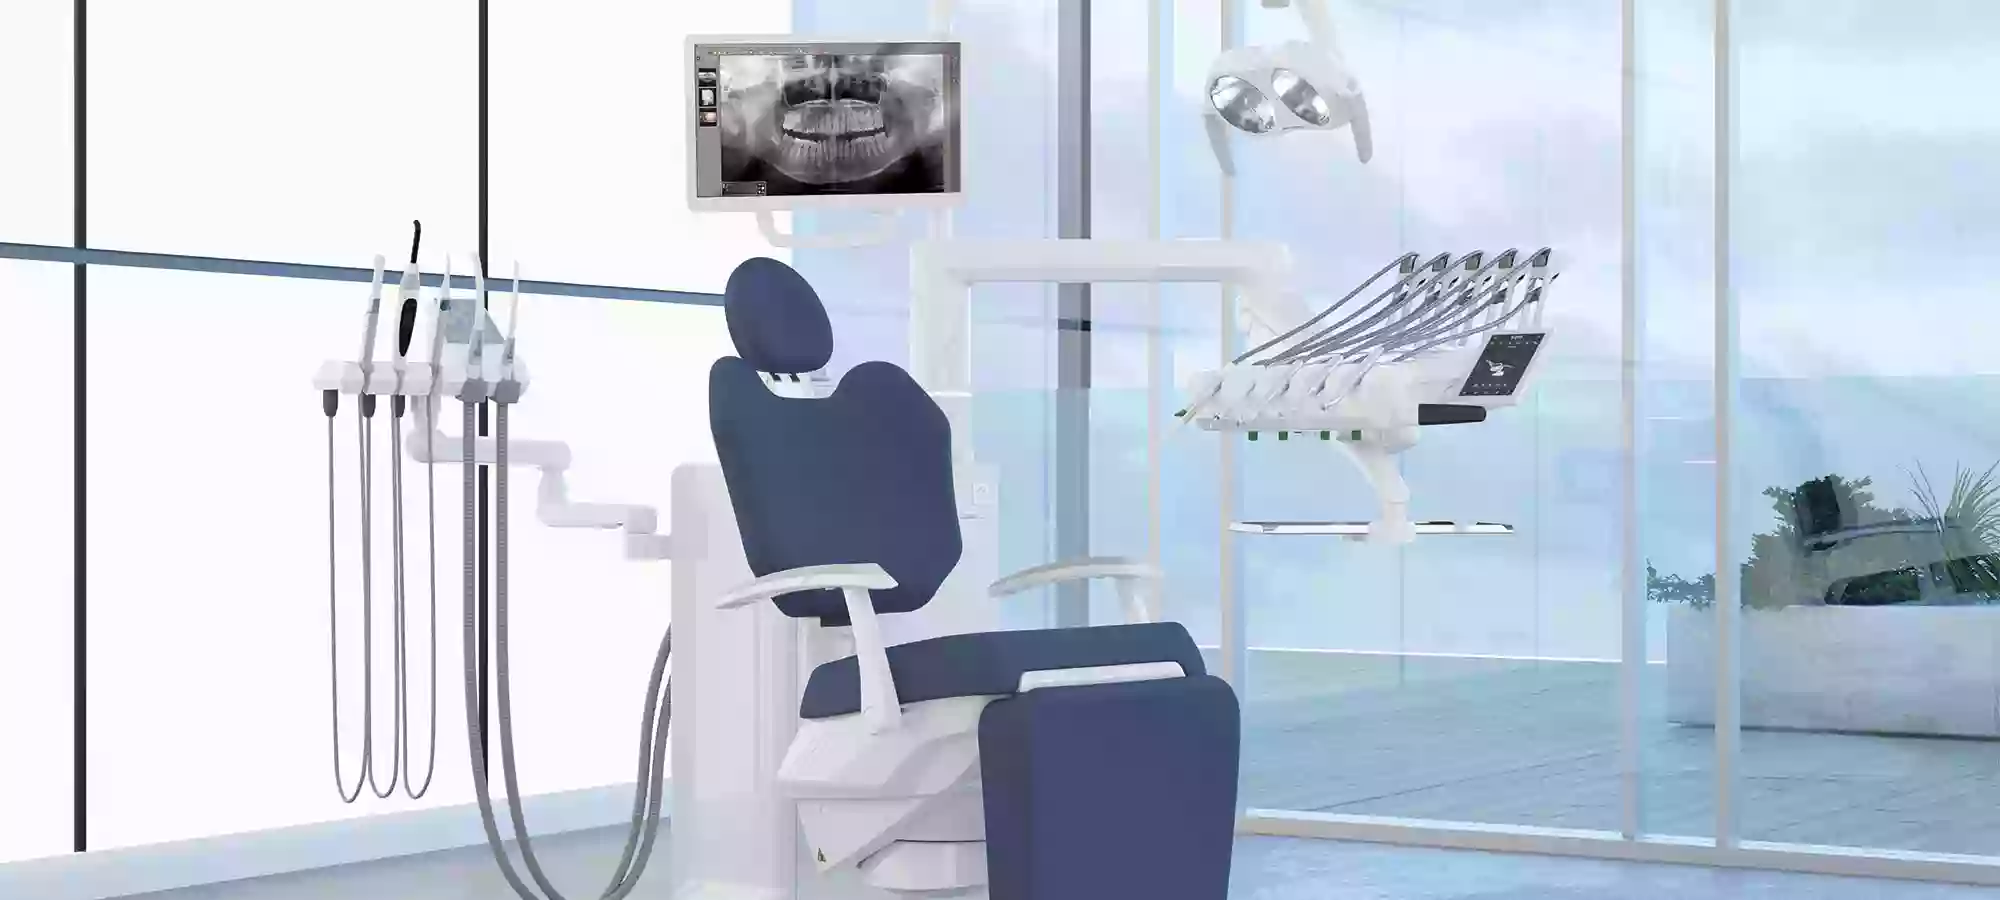 Contact Dental | Reparación y mantenimiento de equipos dentales